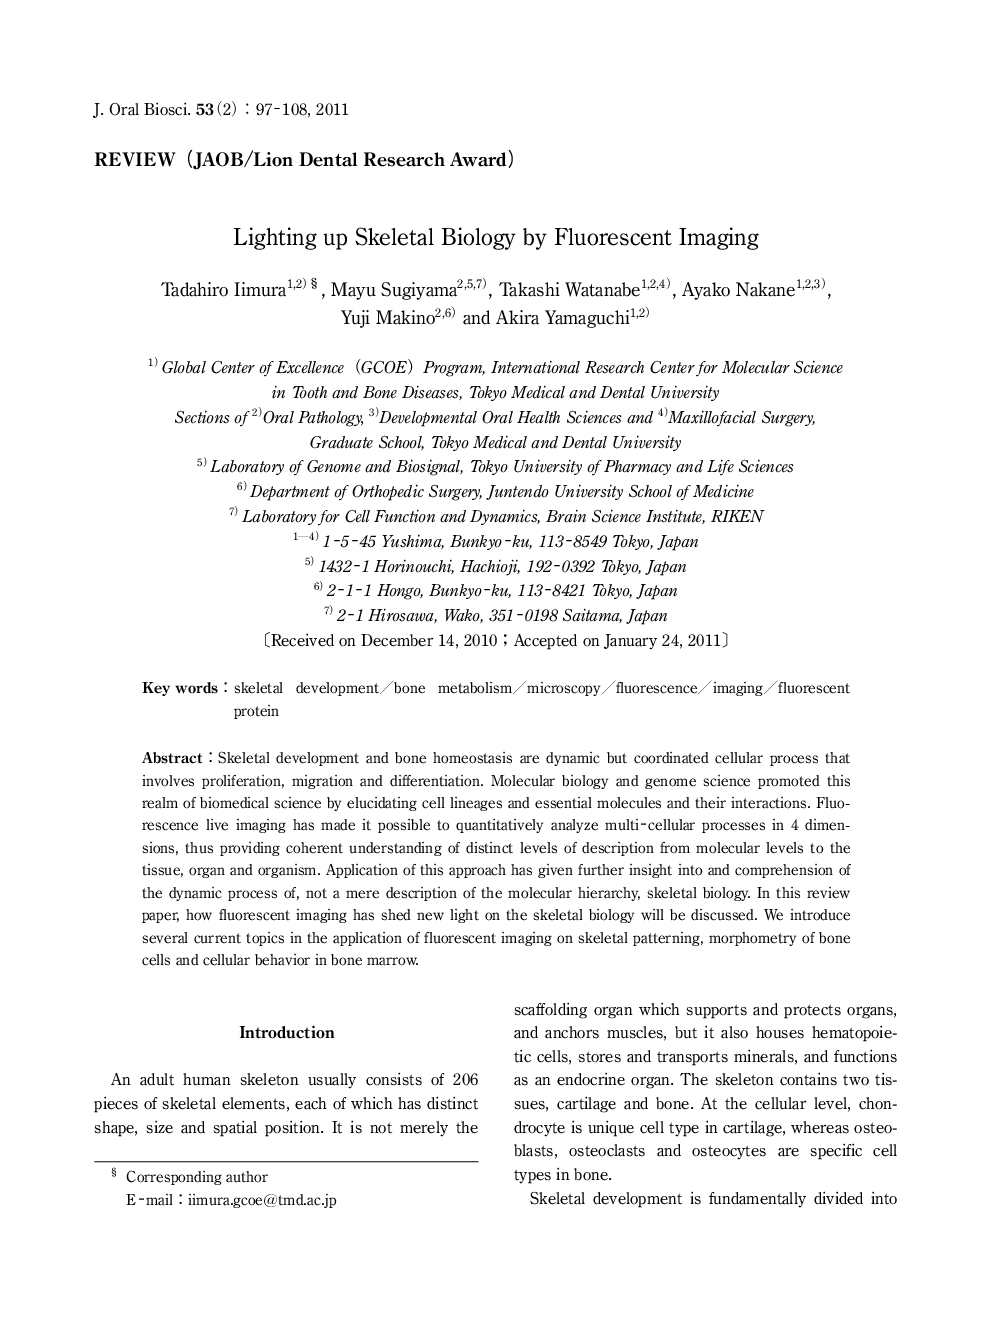 Lighting up Skeletal Biology by Fluorescent Imaging